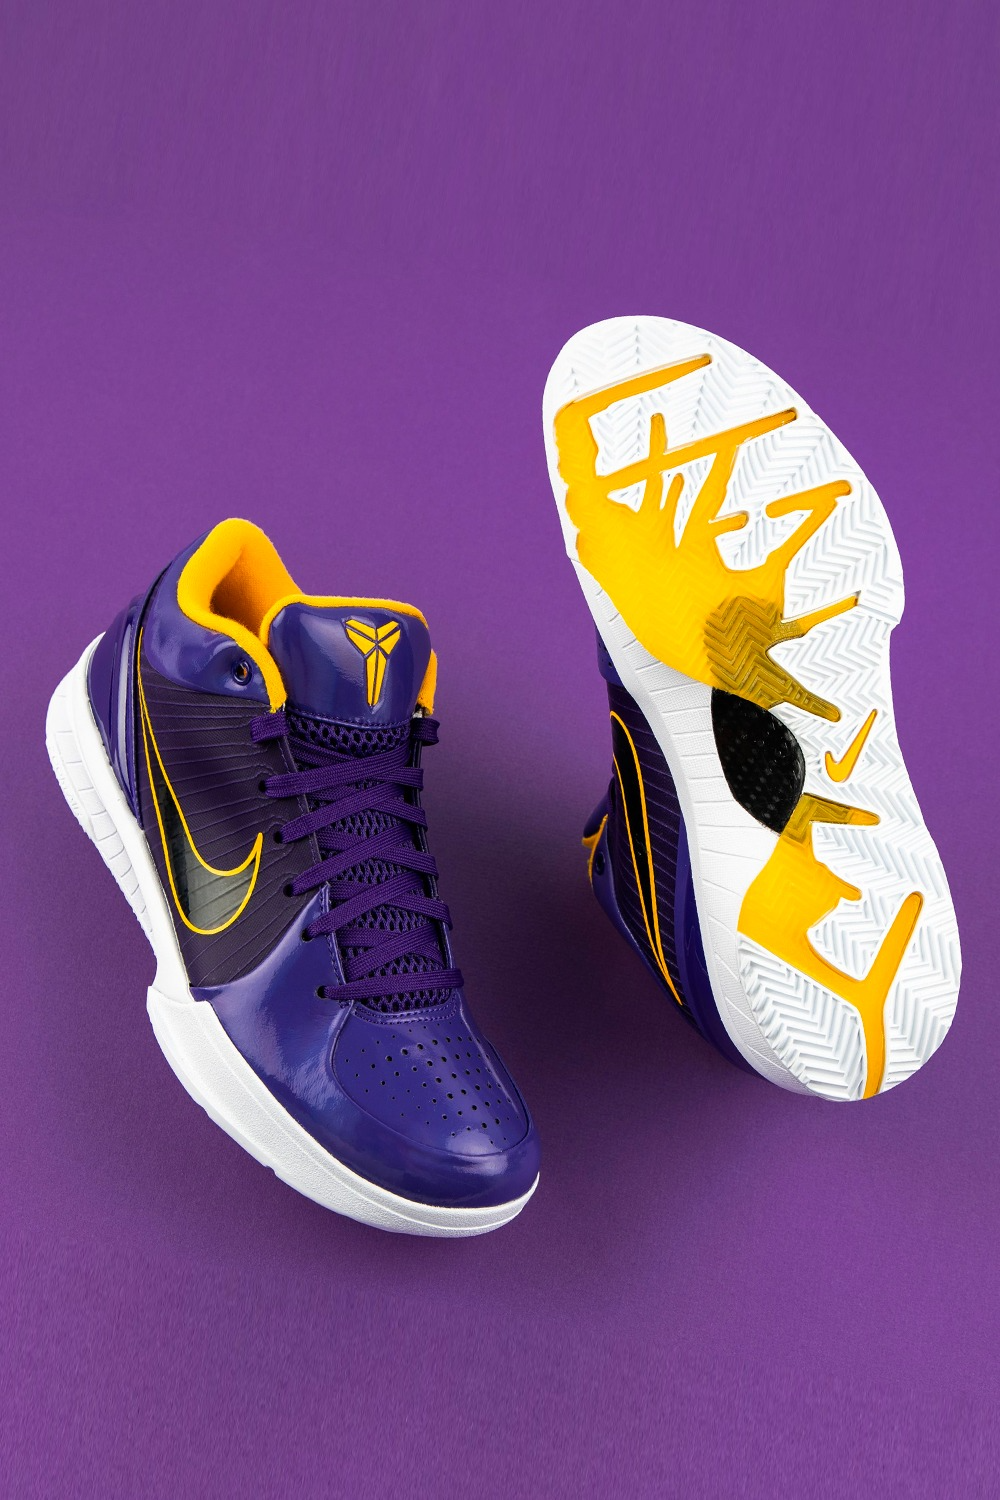 Undefeated Nike Kobe 4 Protro Lakers Kyle Kuzma CQ3869-500